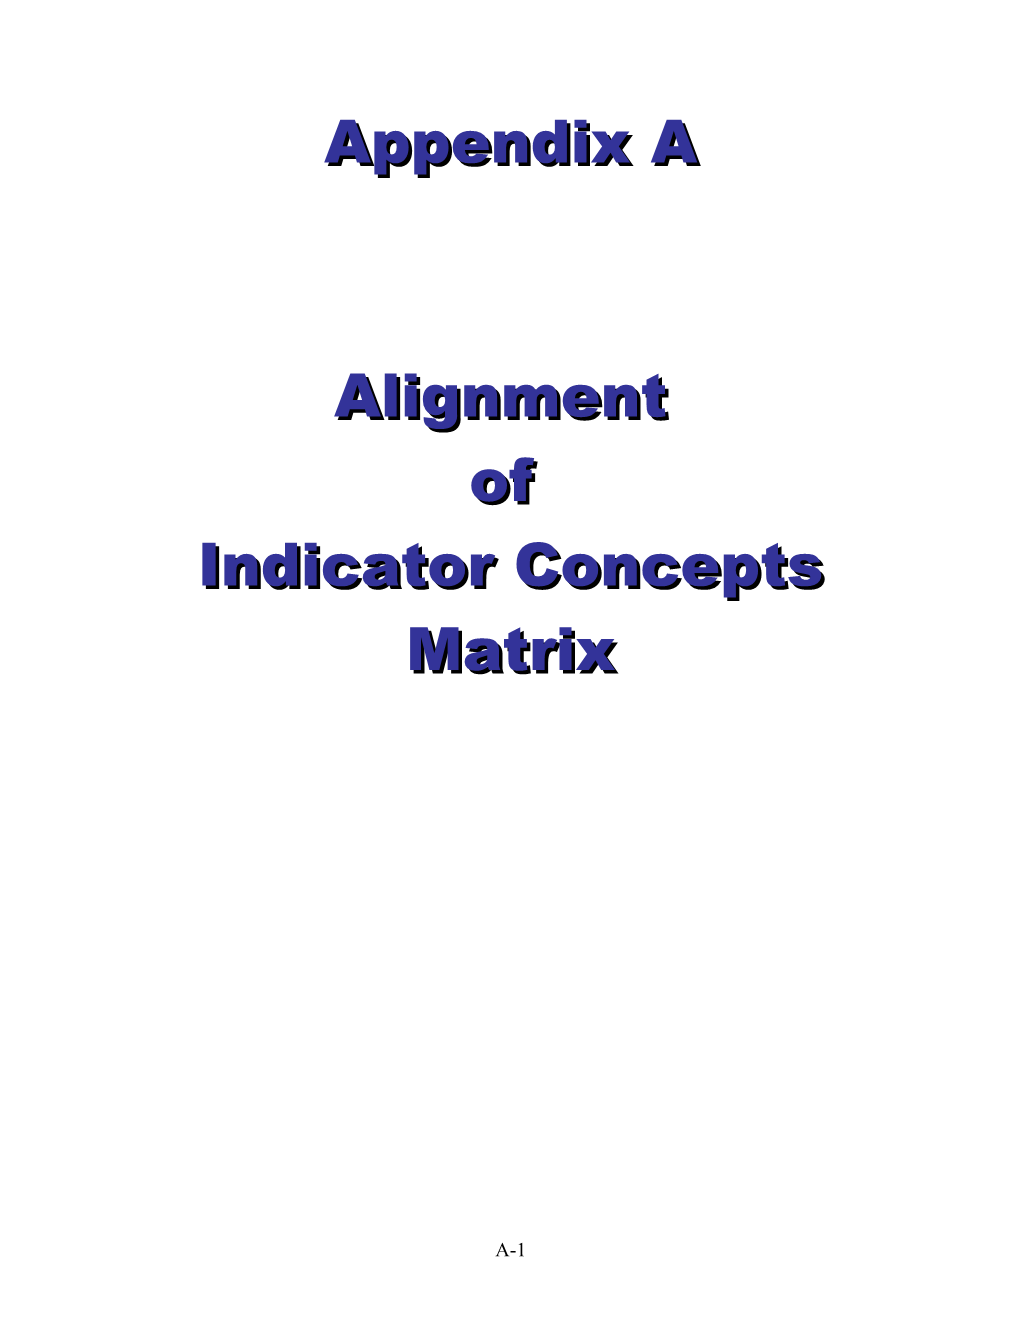 Indicator Concepts Matrix